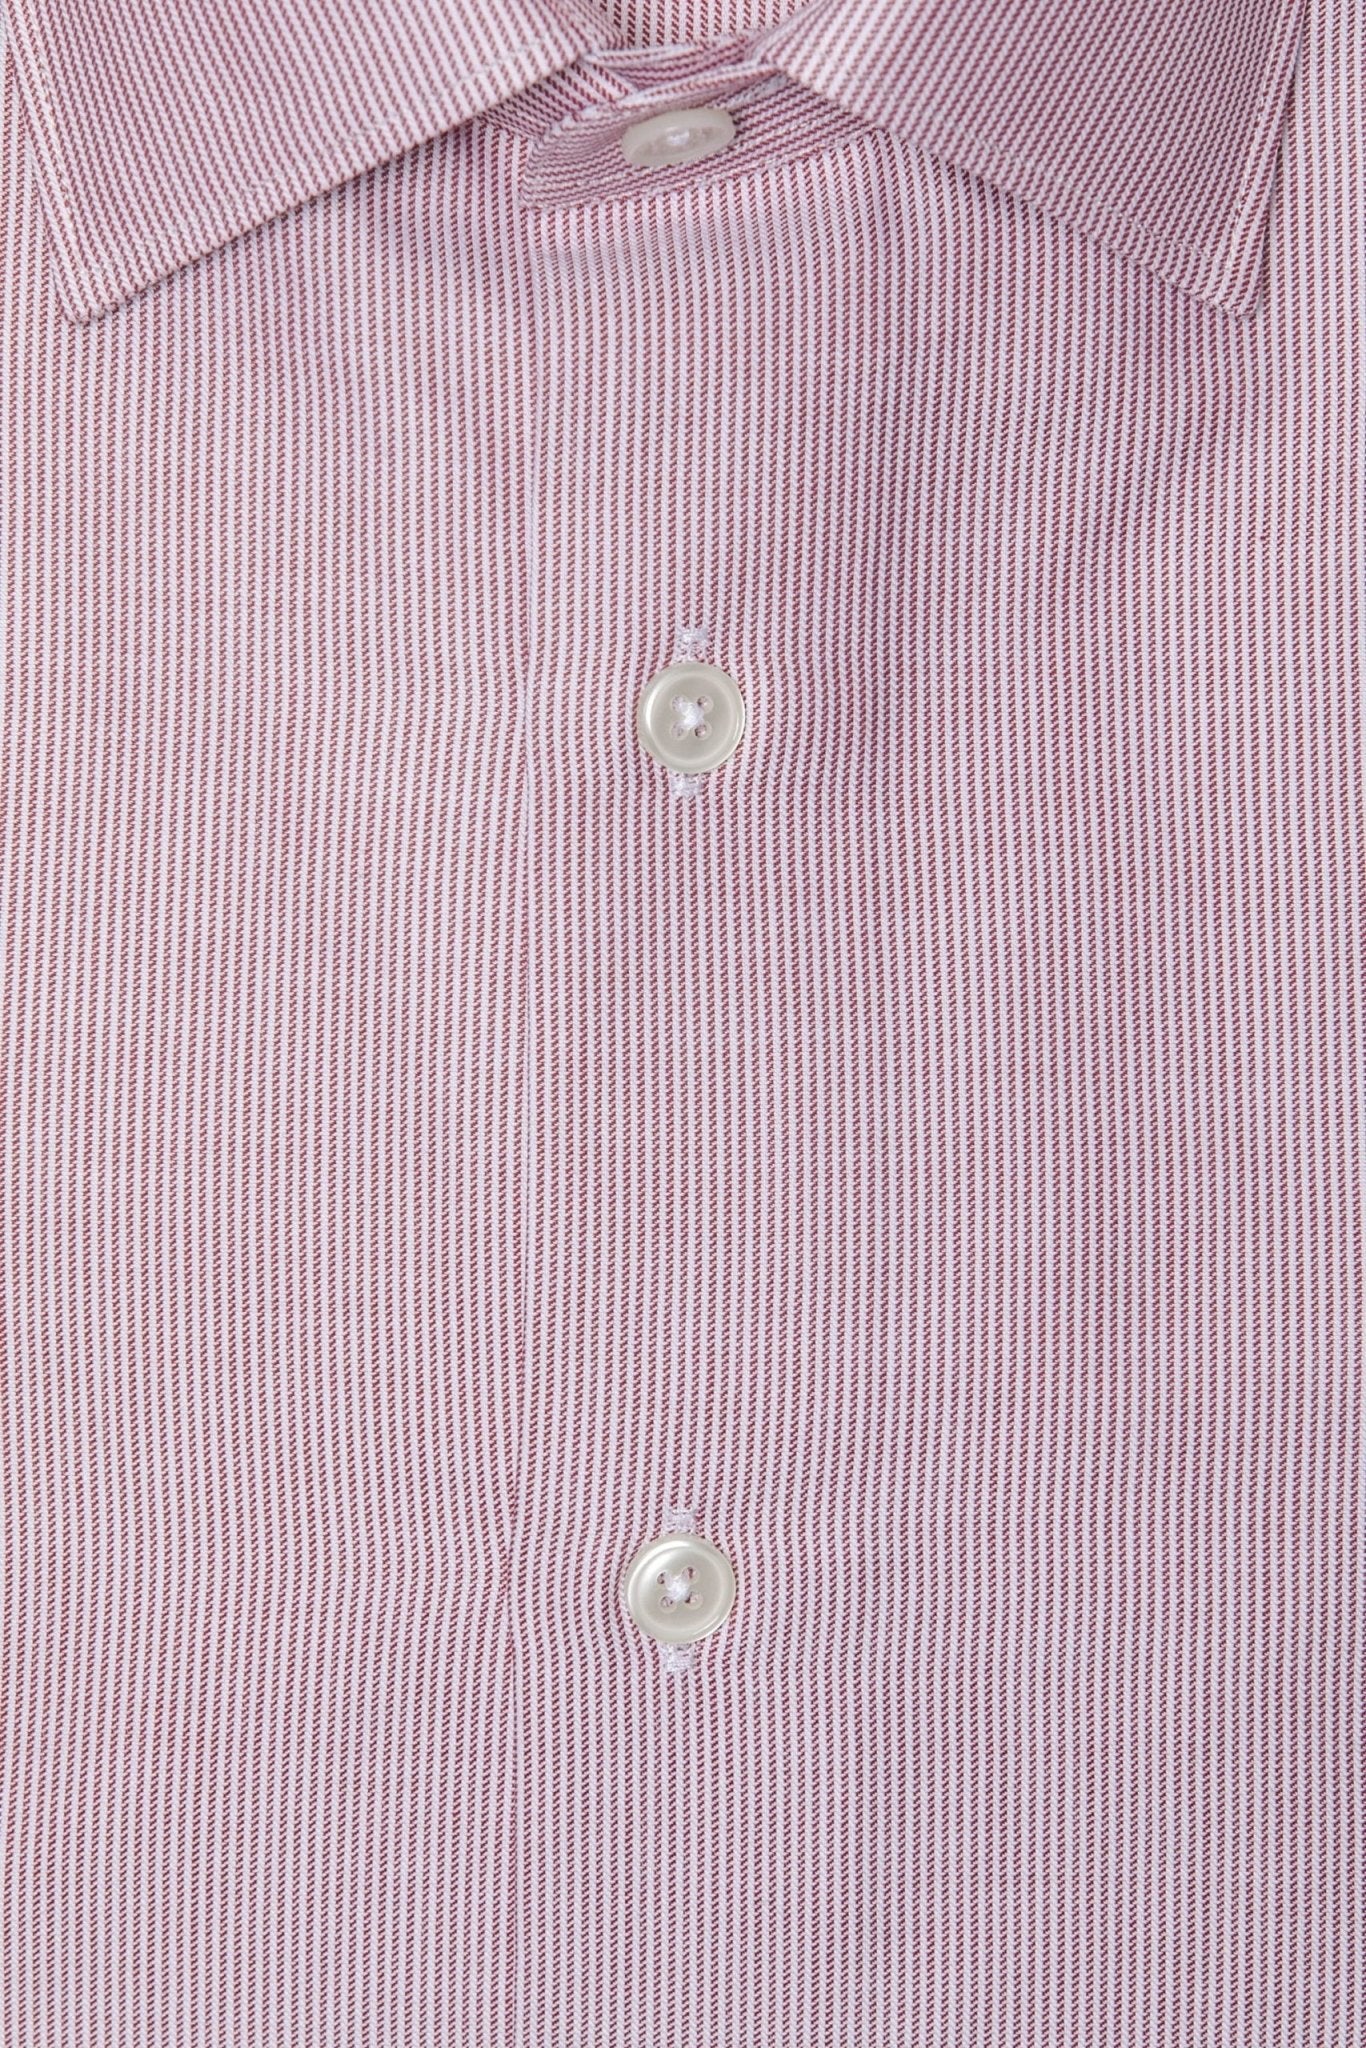 Robert Friedman Pink Cotton Shirt - Fizigo